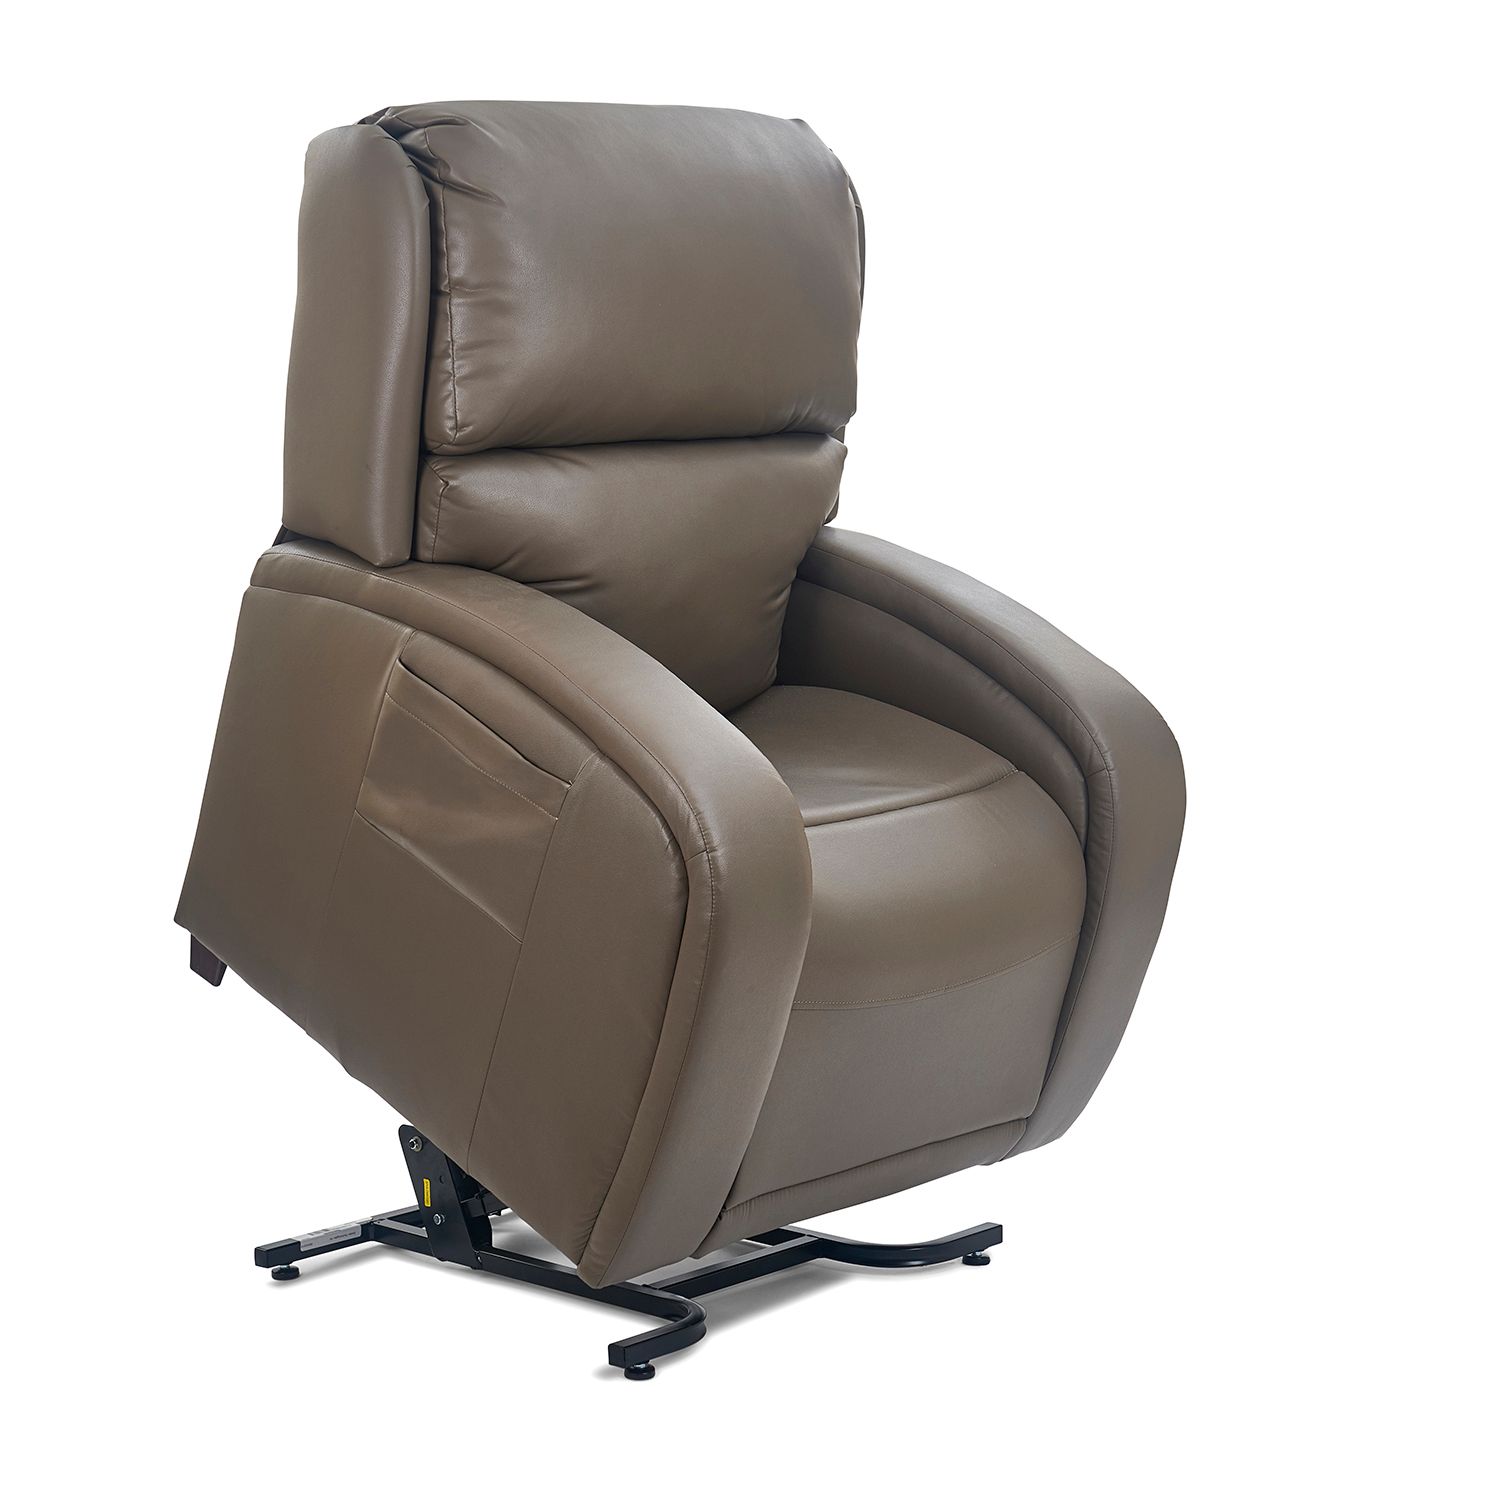 Ontario Golden Tech lift chair recliner twilight ezsleeper cloud viva relaxer maxi-comfort